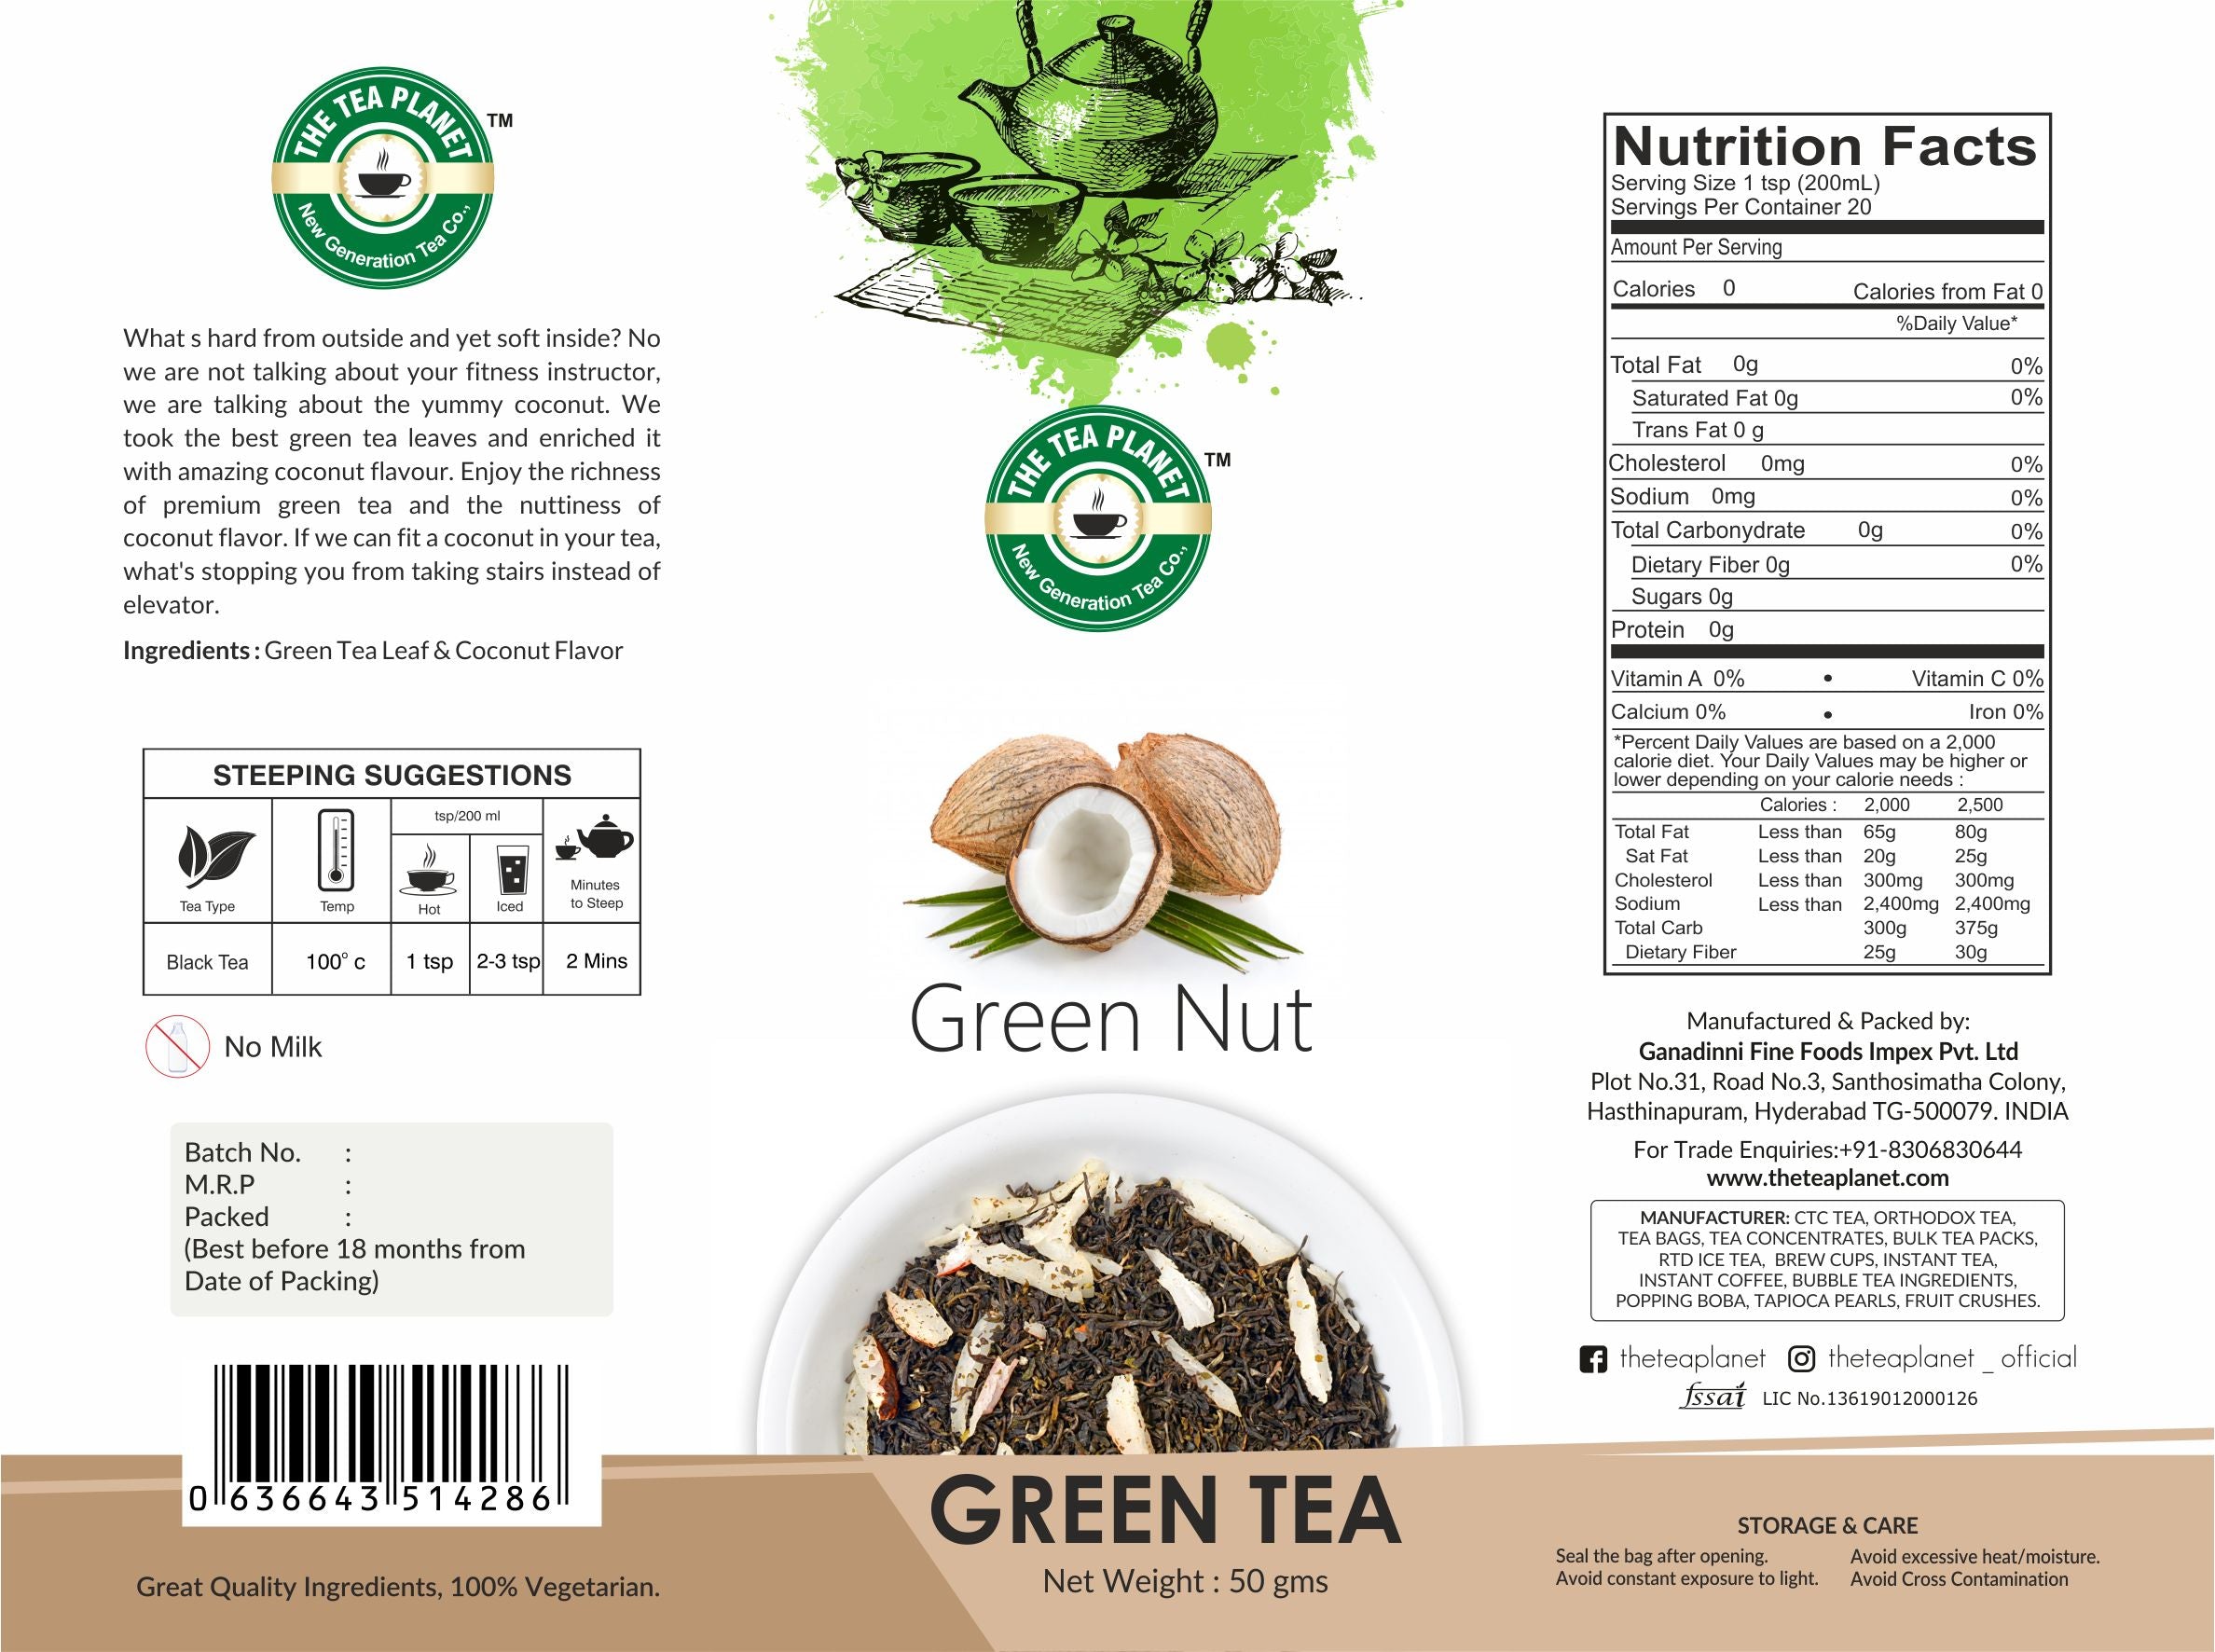 Green Nut Orthodox Tea - 50 gms